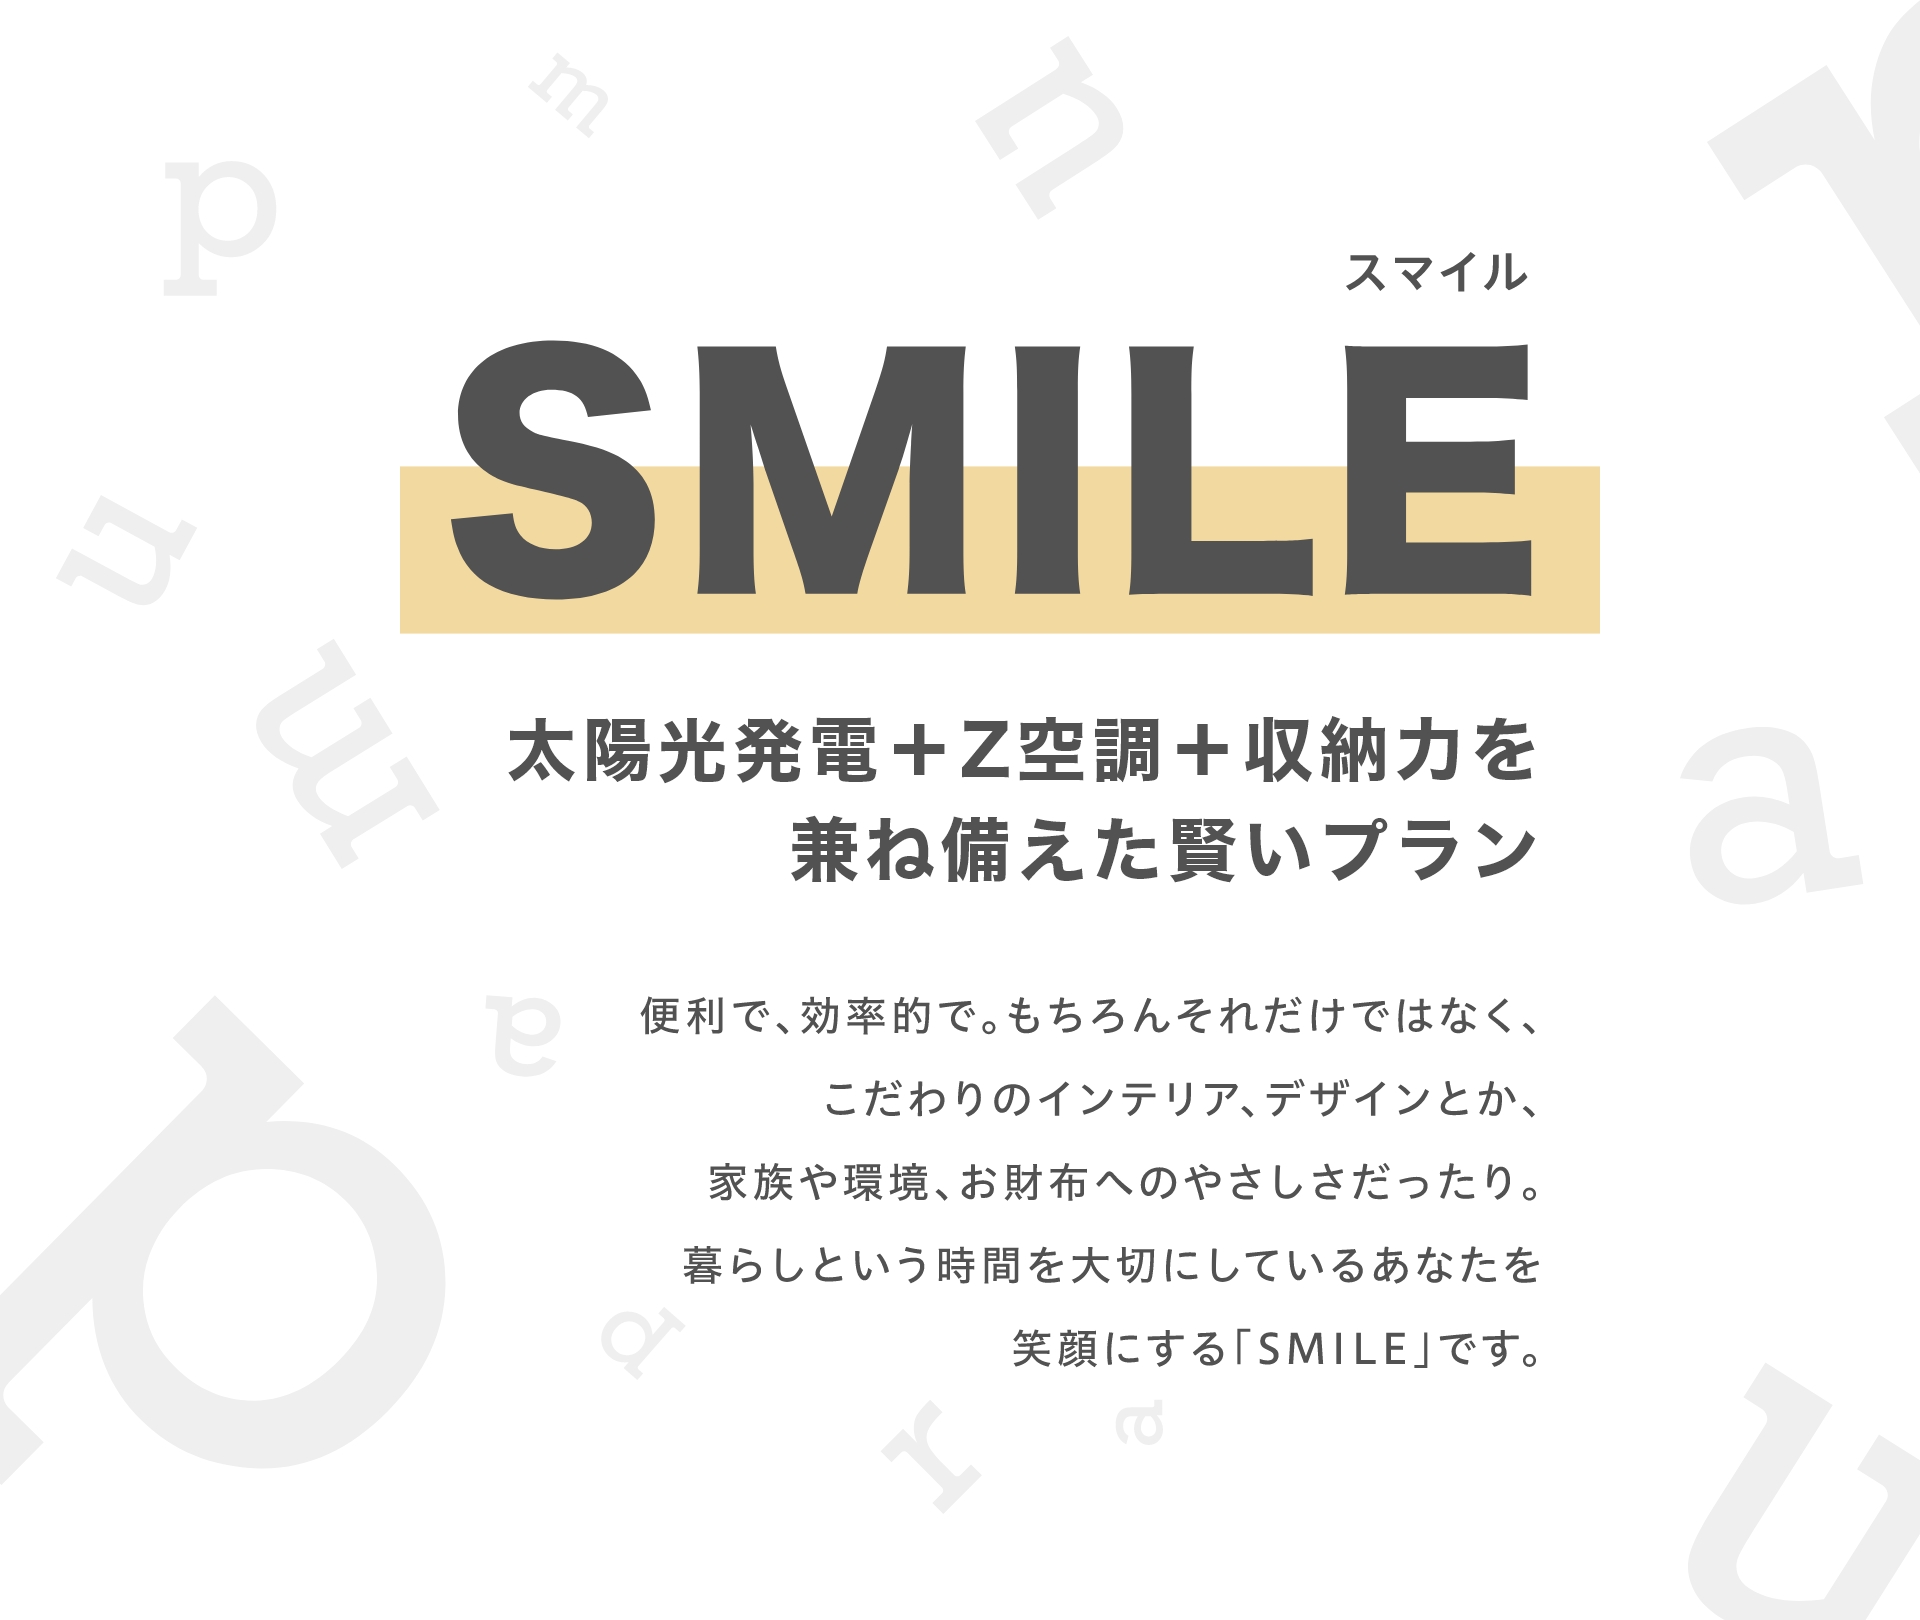 SMILE (スマイル)
			太陽、笑顔、賢い暮らし
			便利で、効率的で。もちろんそれだけではなく、
			こだわりのインテリア、デザインとか、
			家族や環境、お財布へのやさしさだったり。
			暮らしという時間を大切にしているあなたを
			笑顔にする「SMILE」です。